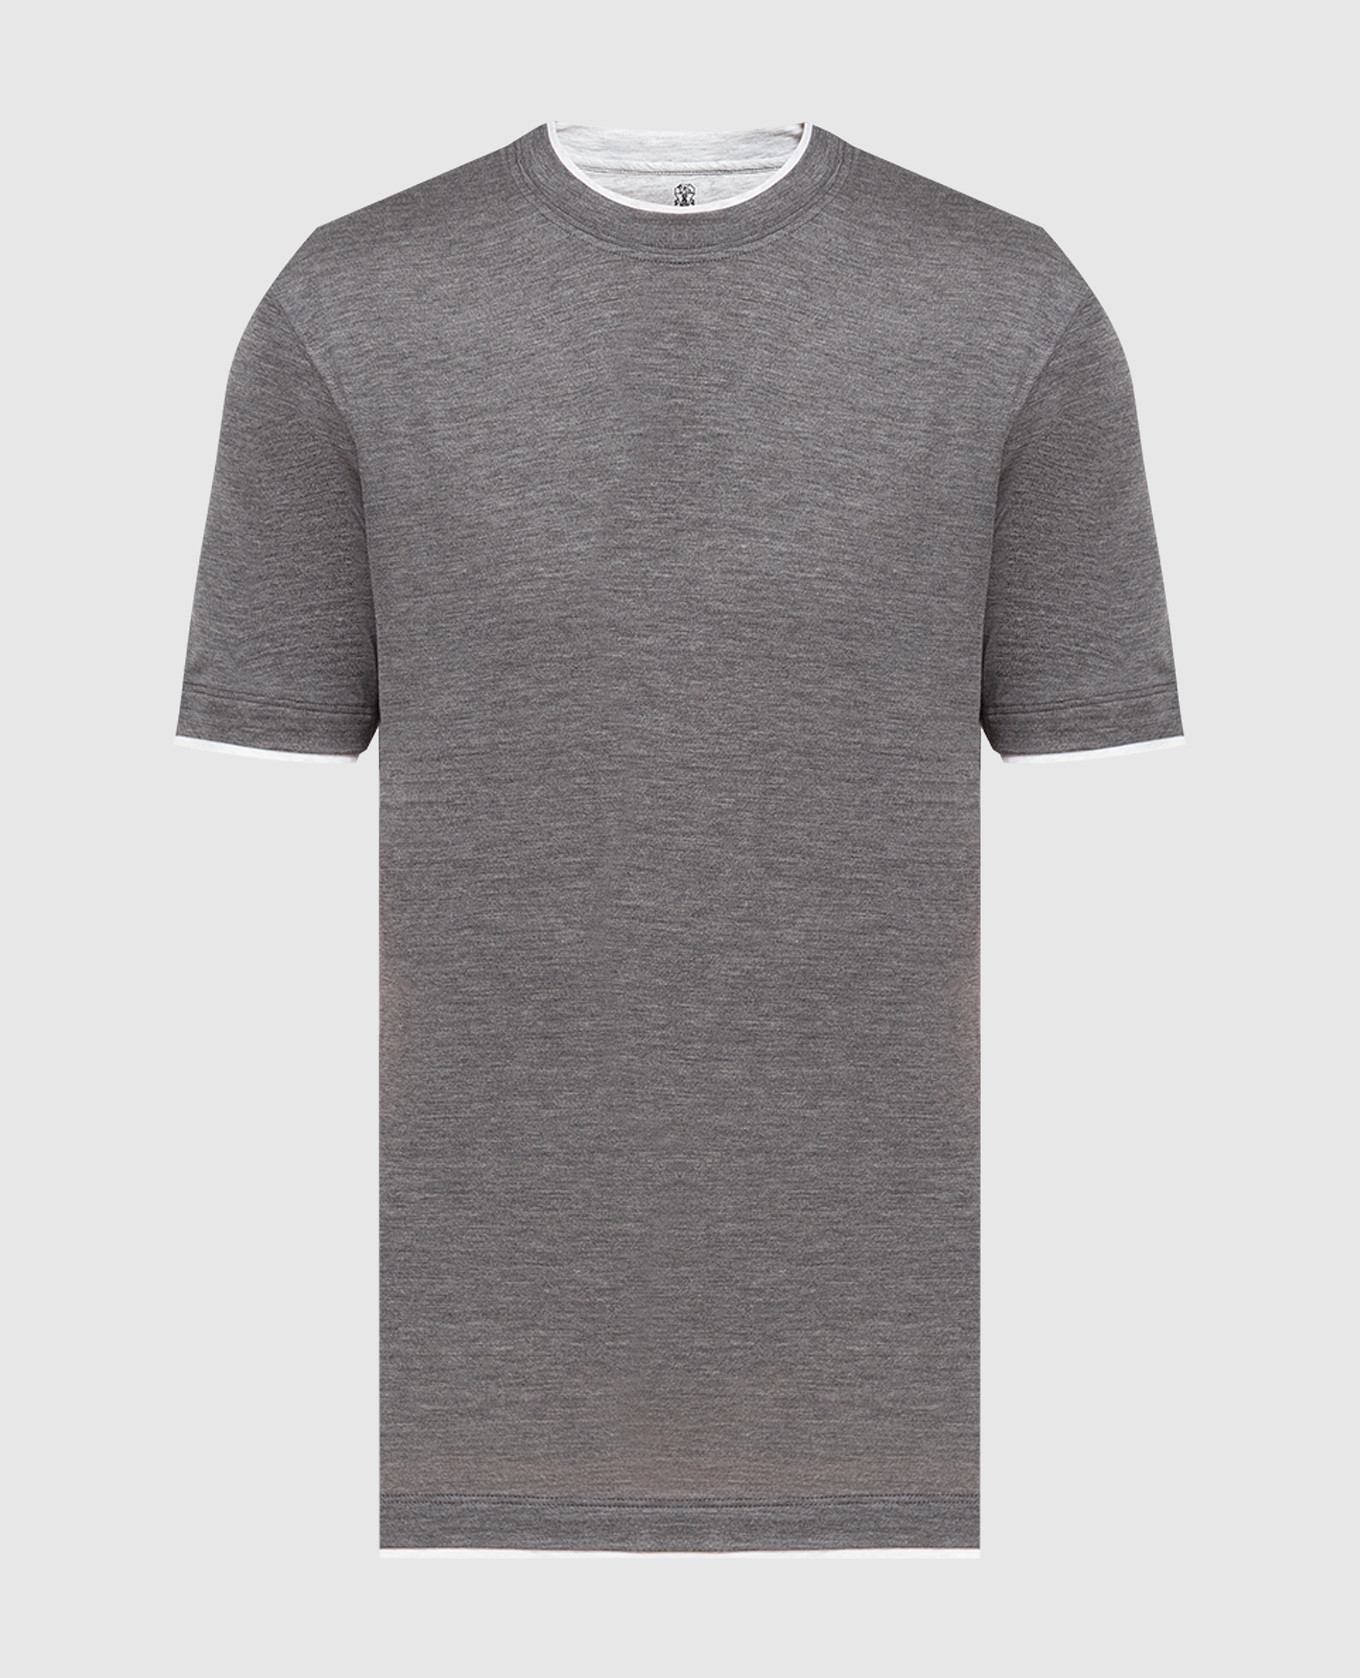 Gray layered t-shirt